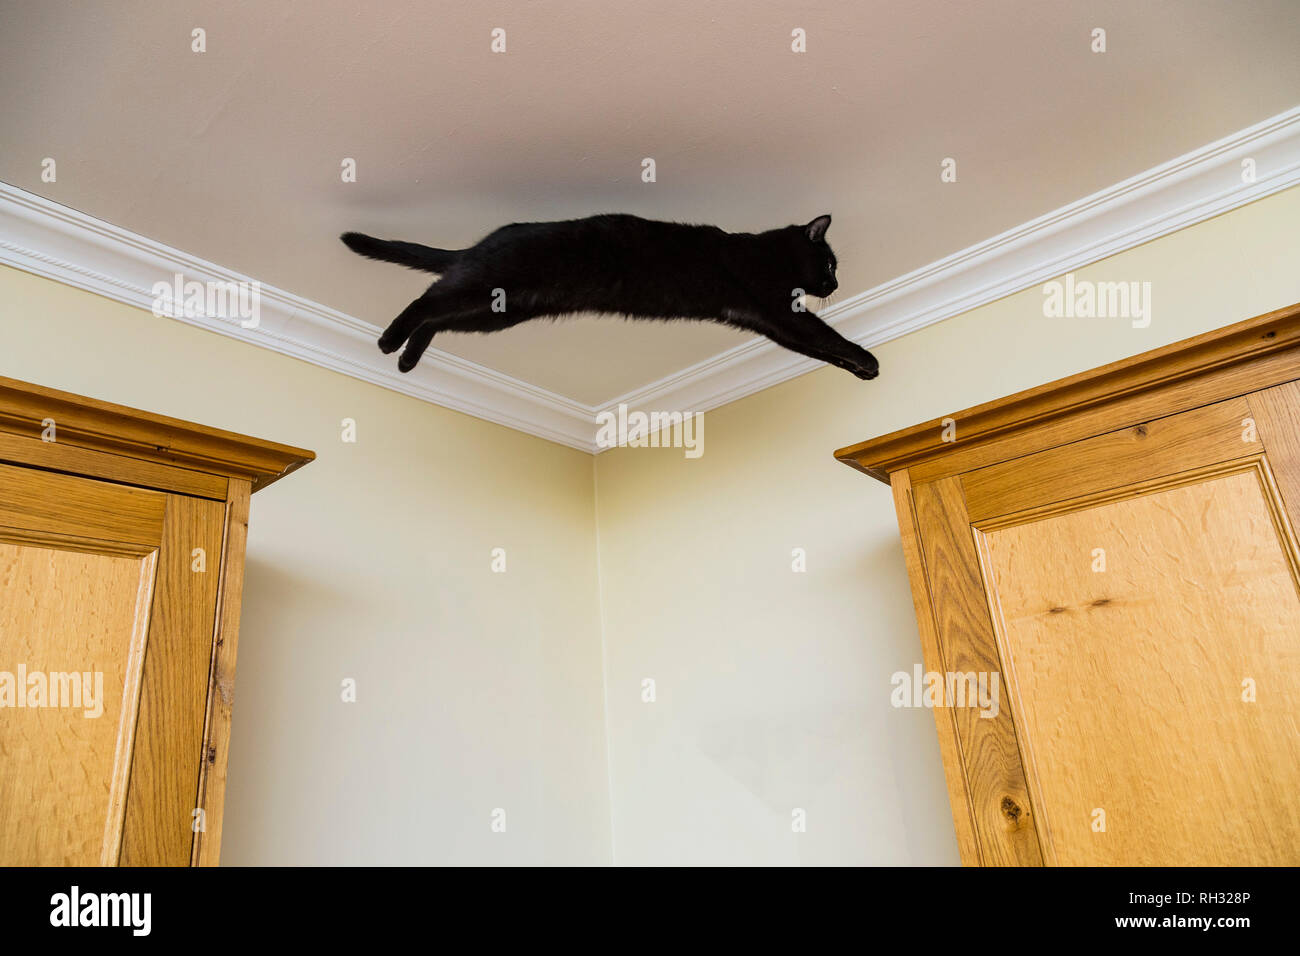 Un jeune chat noir saute entre deux placards en bois. Banque D'Images